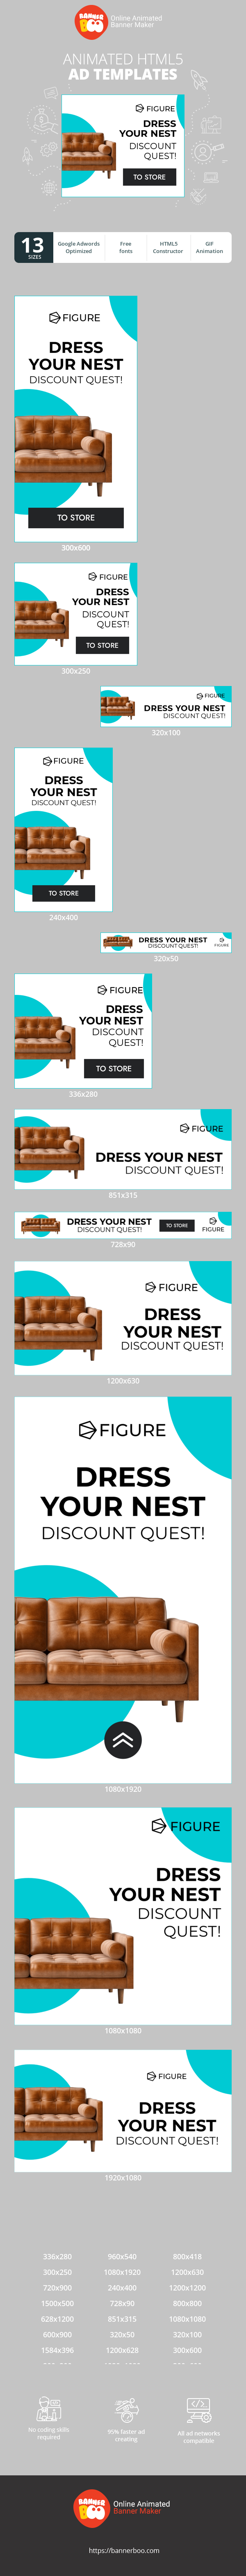 Шаблон рекламного банера — Dress Your Nest Discount Quest! — Furniture Sale